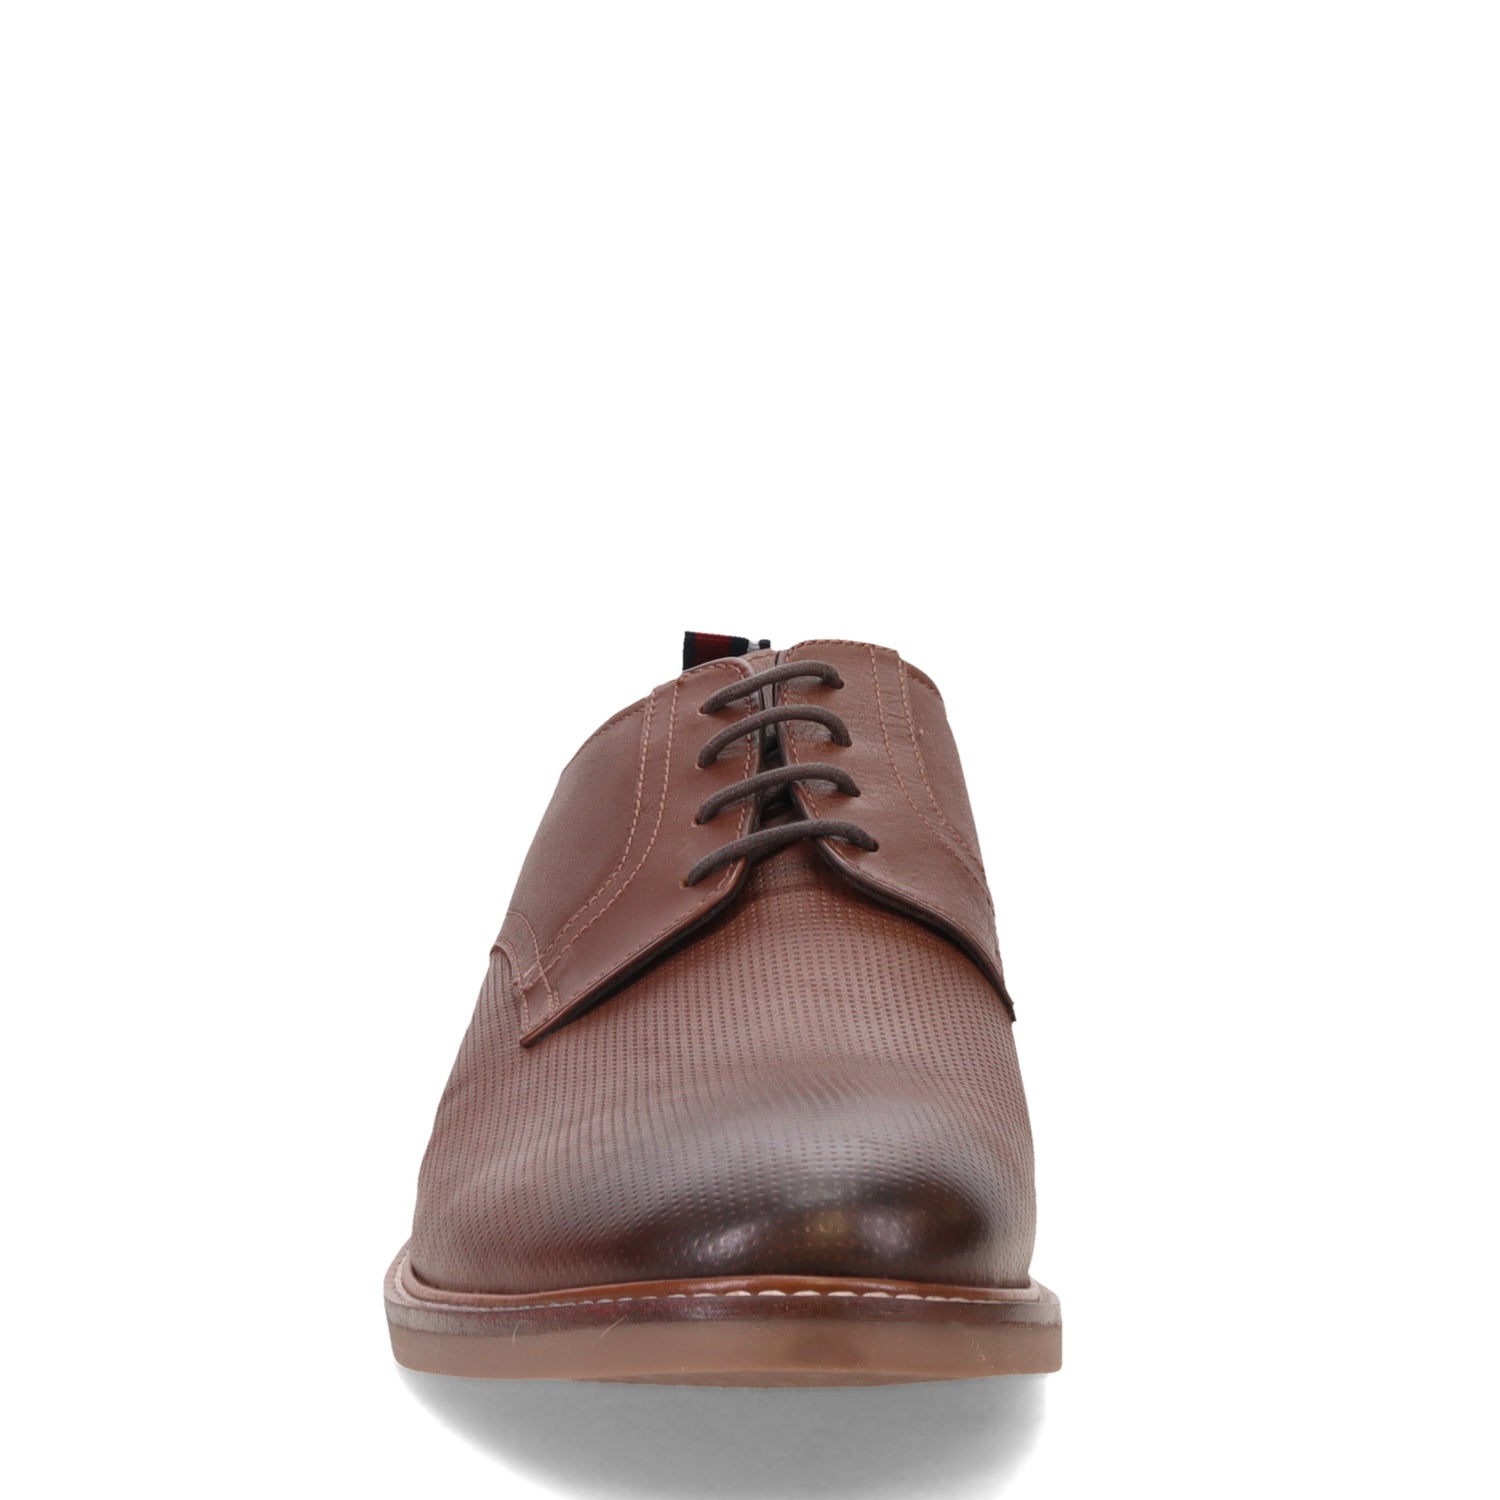 Peltz Shoes  Men's Ben Sherman Brent Plain Toe Oxford BROWN BNM00122-H04